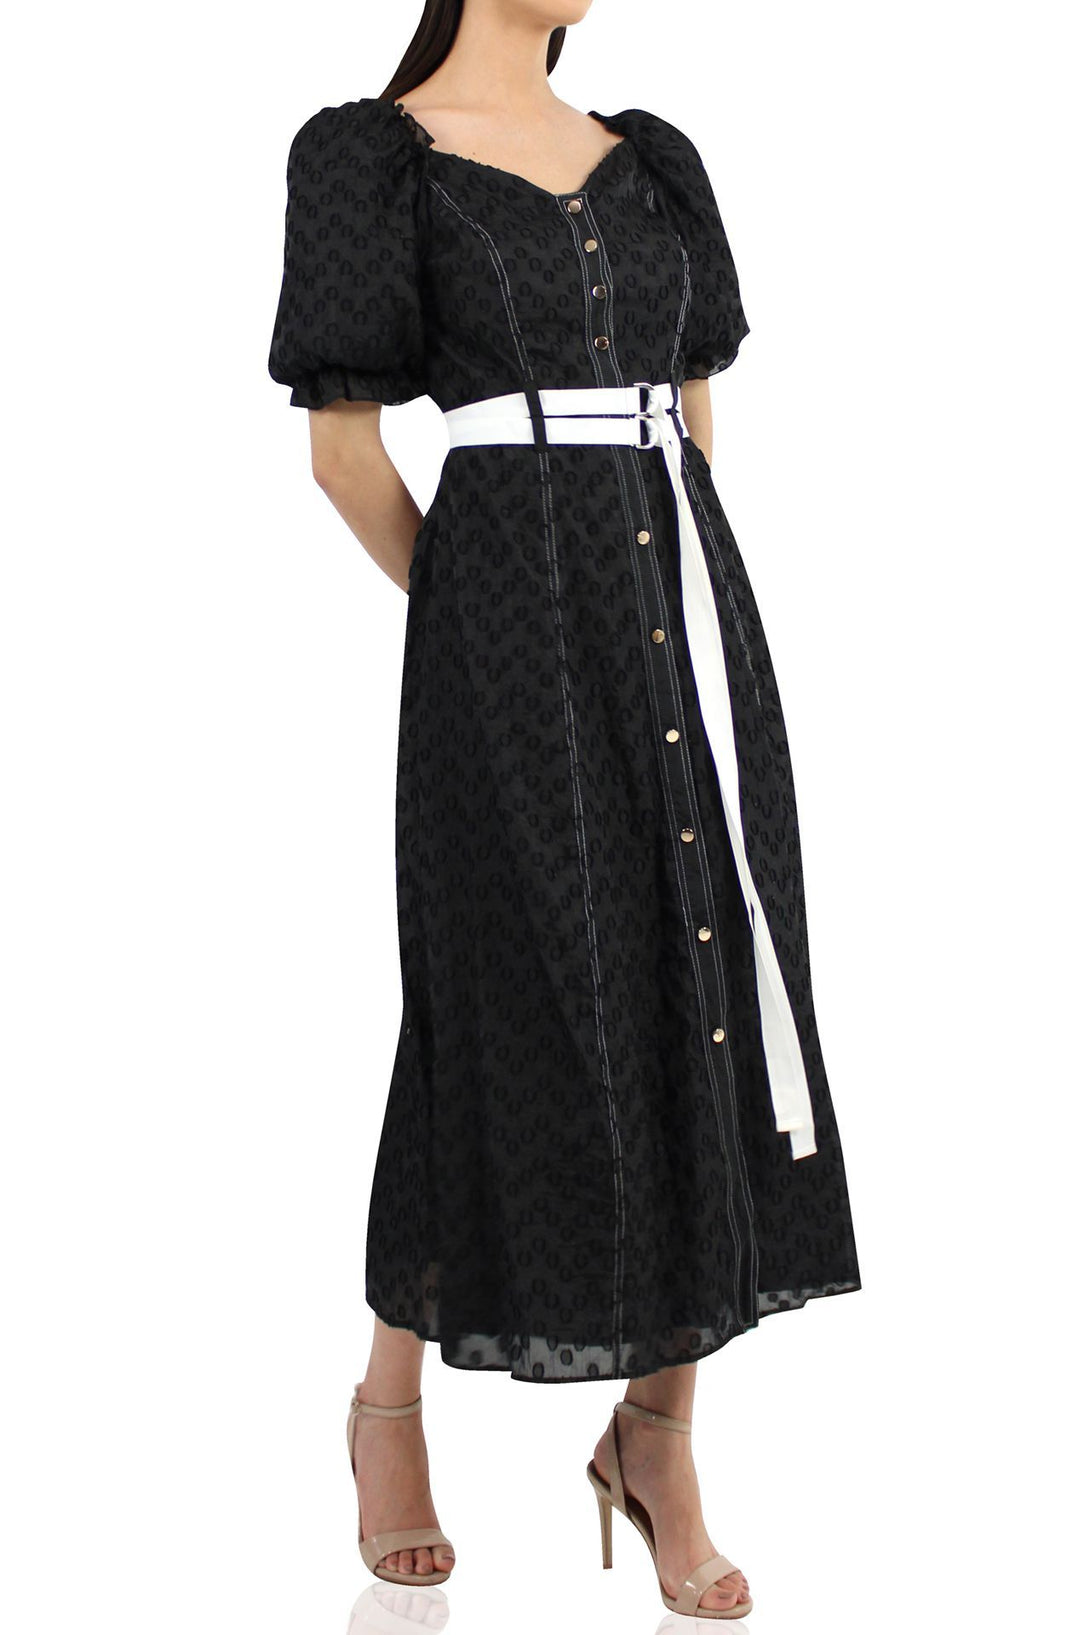 Satin-Silk-Designer-Belted-Dress-In-Black-By-Kyle-Richards